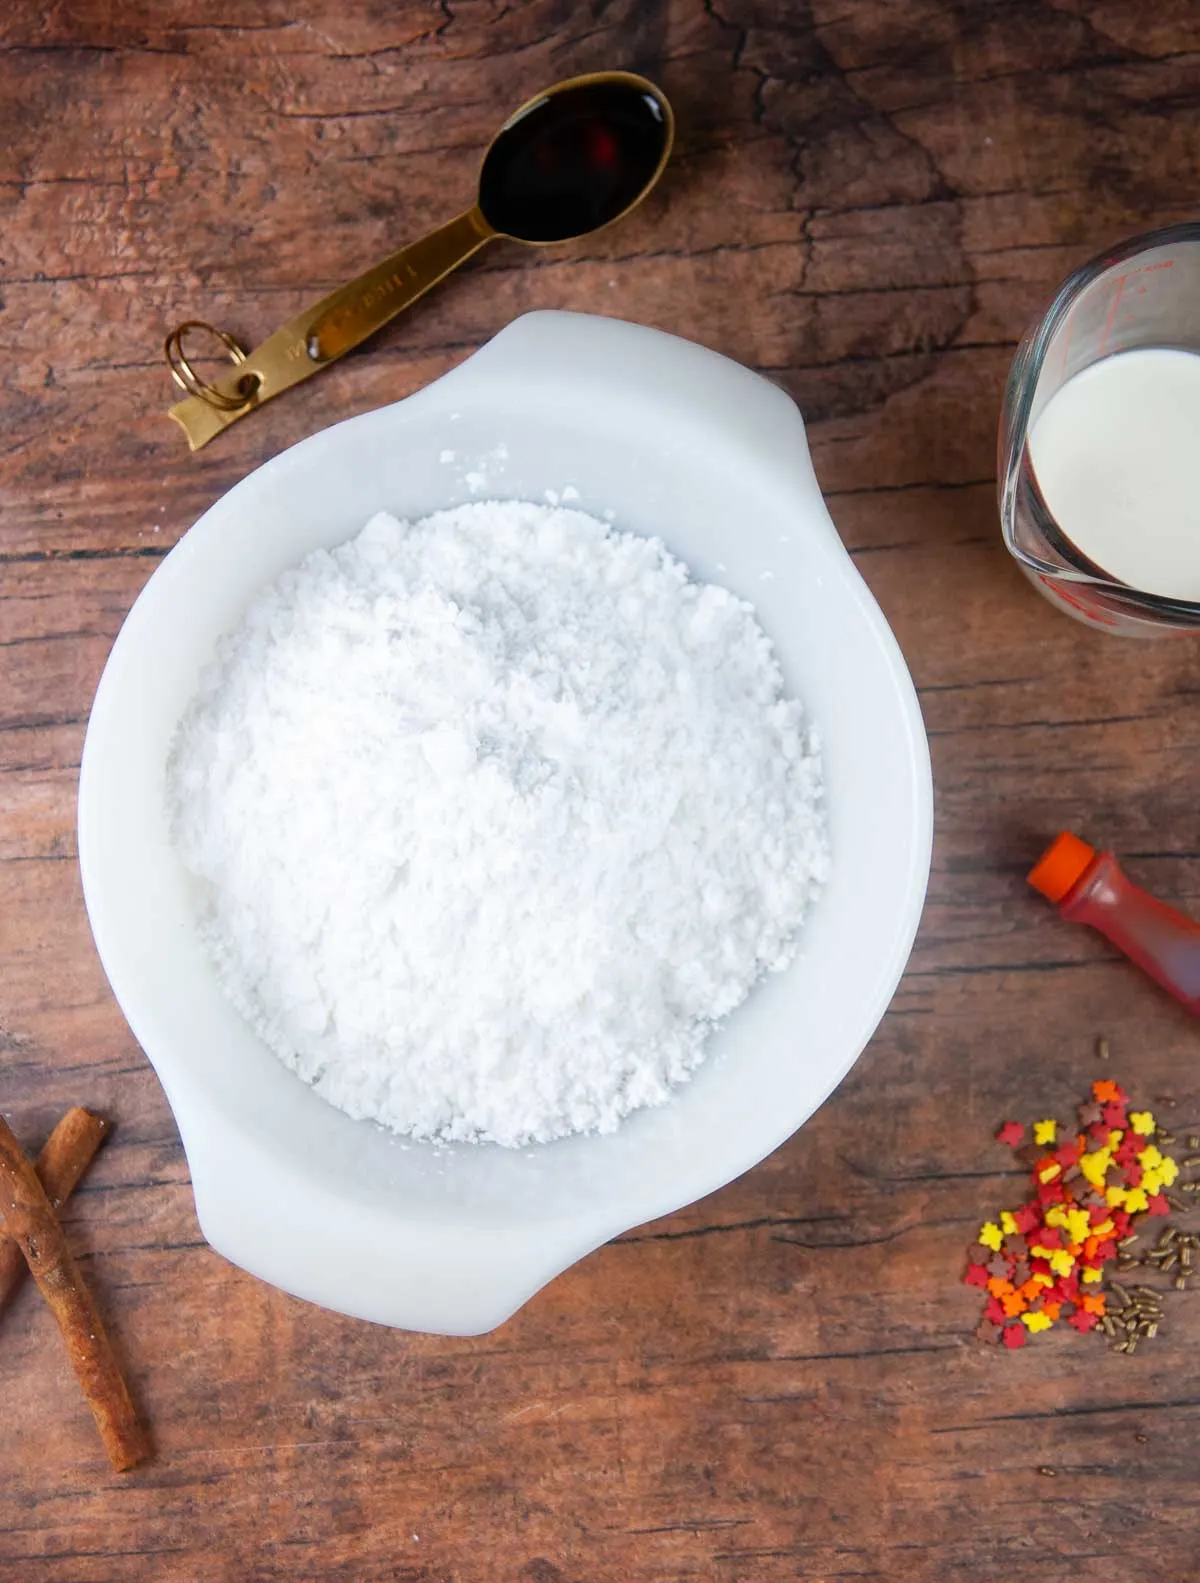 Easy marbled cookie icing ingredients: Powdered sugar, flavoring, milk, food coloring